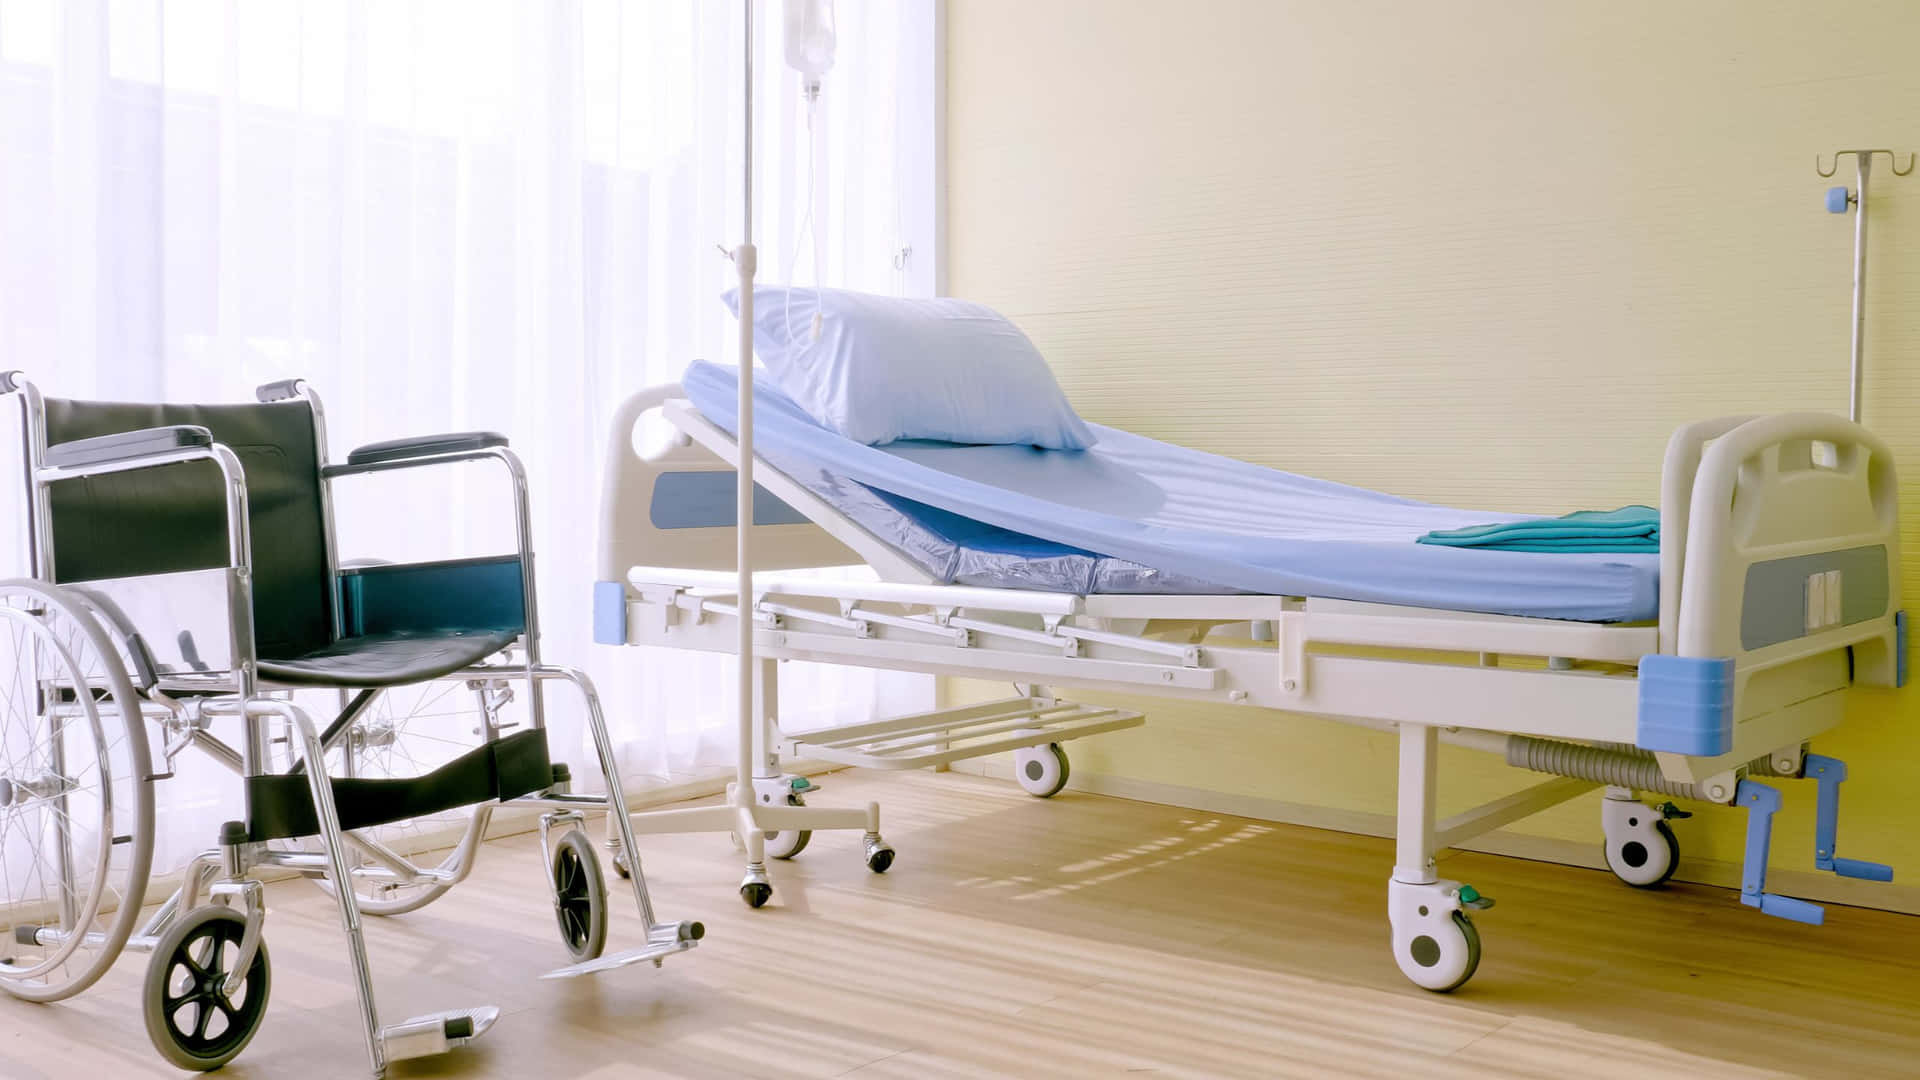 Krankenhausbettund Rollstuhl In Einem Raum